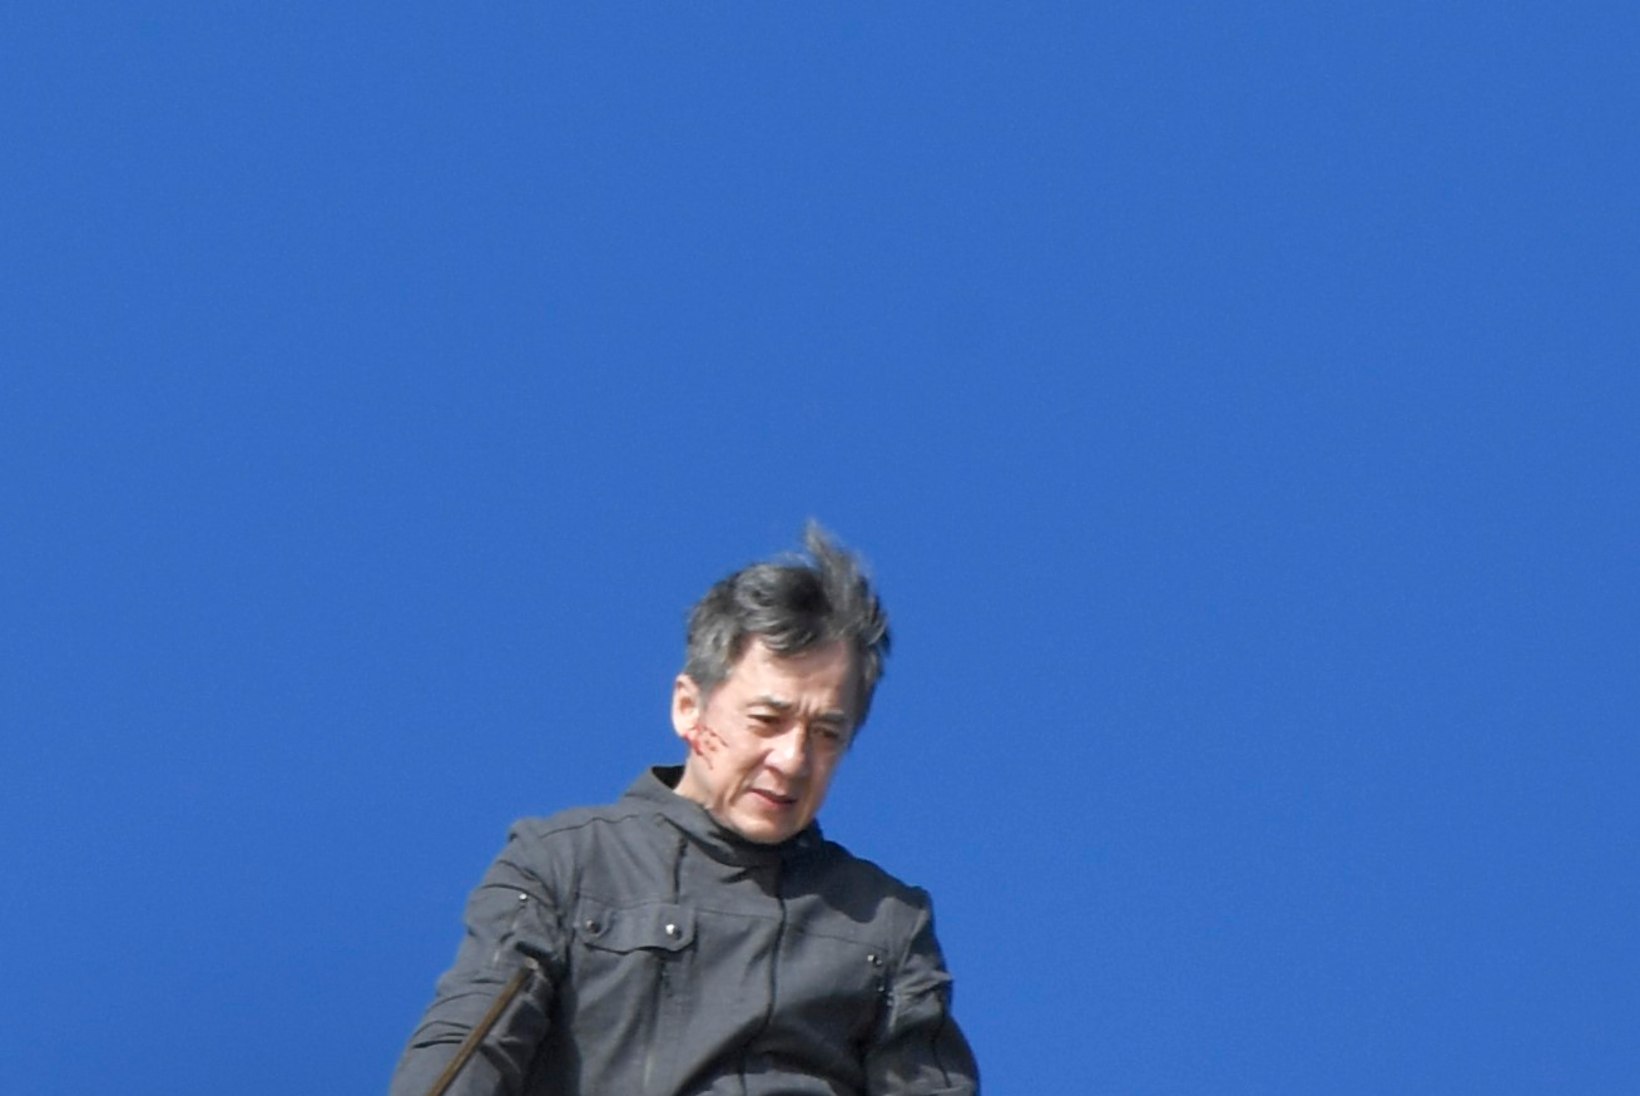 FOTOD | Vanameister teeb endiselt hirmuäratavaid trikke: Jackie Chan ronis uue filmi tarbeks Sydney ooperimaja katusele